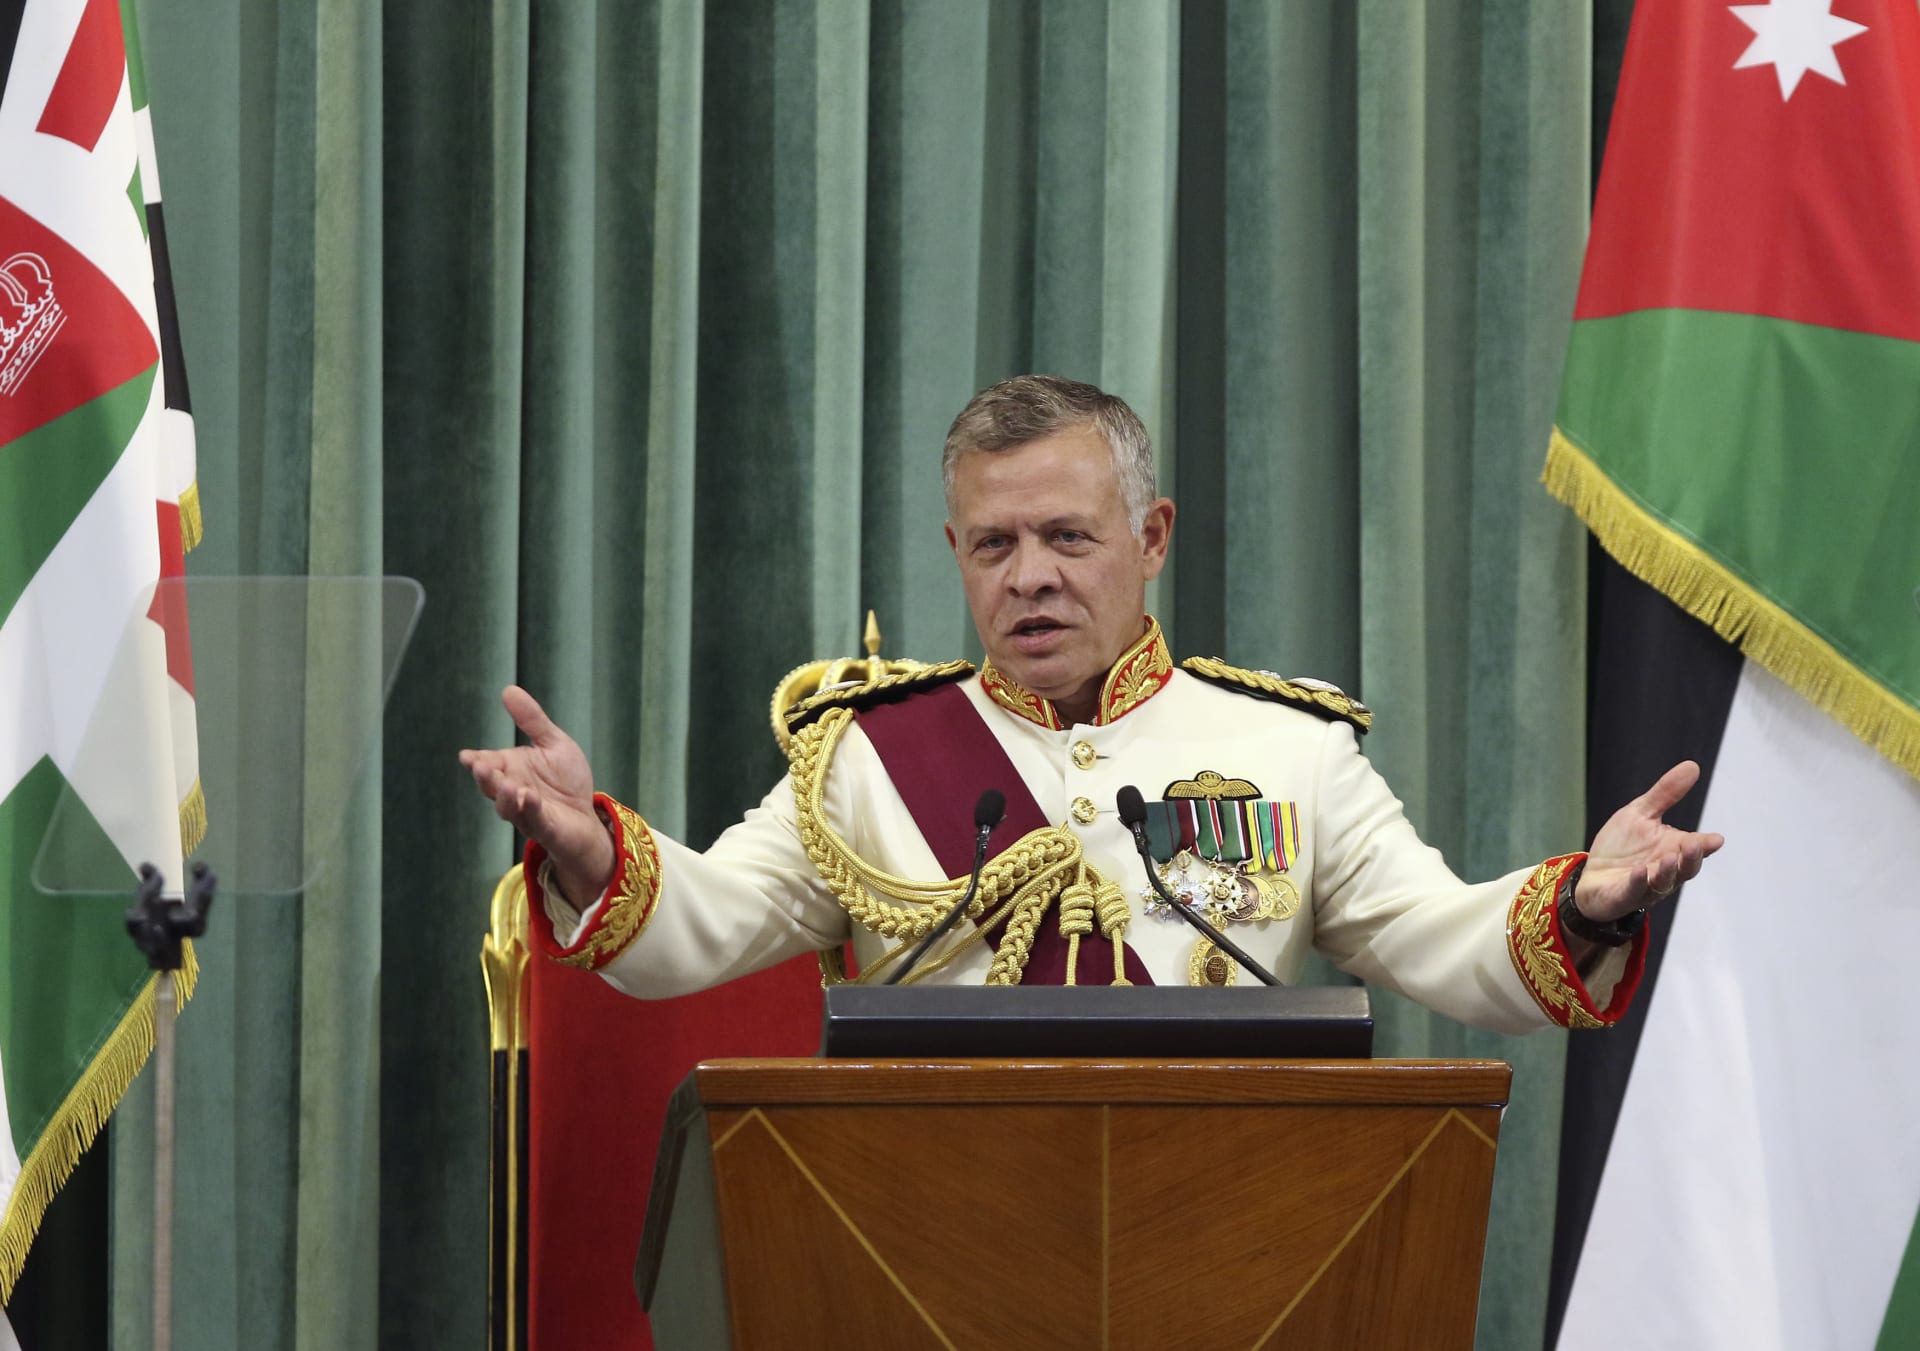 في عيد ميلاده الـ60.. ملك الأردن يوجه بوضع رؤية عابرة للحكومات بعد "تباطؤ المسيرة"